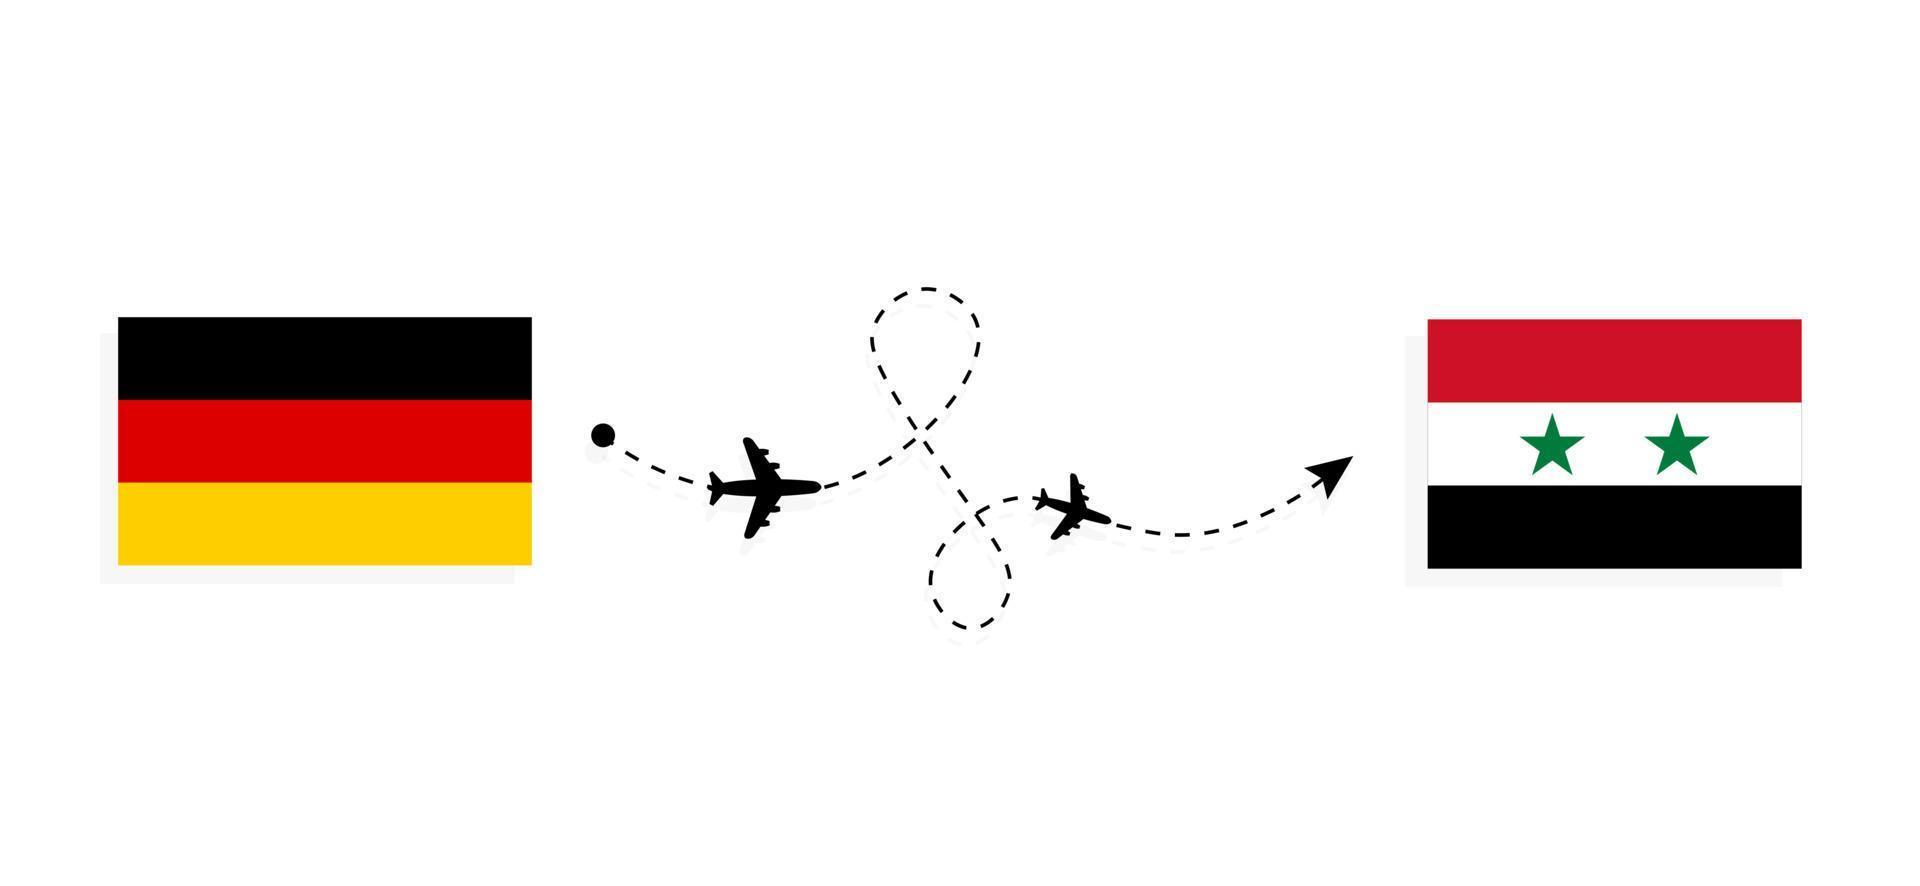 voo e viagens da Alemanha para a Síria pelo conceito de viagens de avião de passageiros vetor